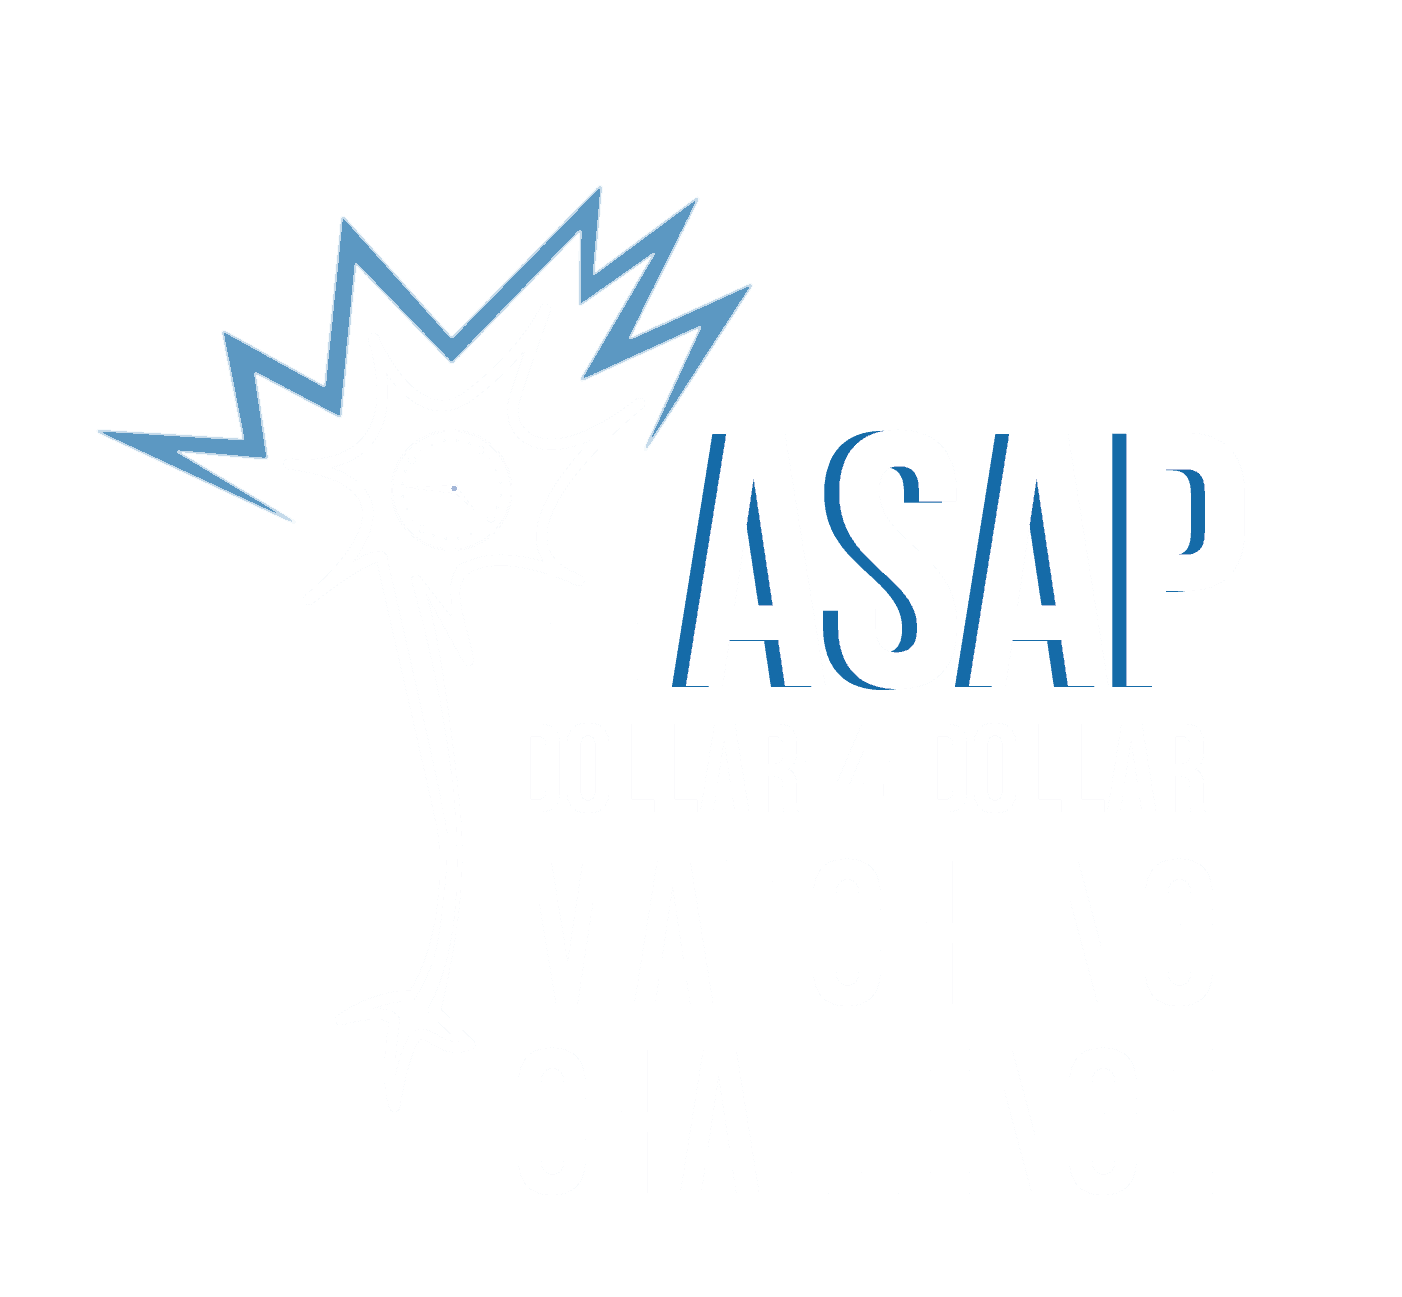 Le défi de jumelage ASAP Dollar-4-Dollar